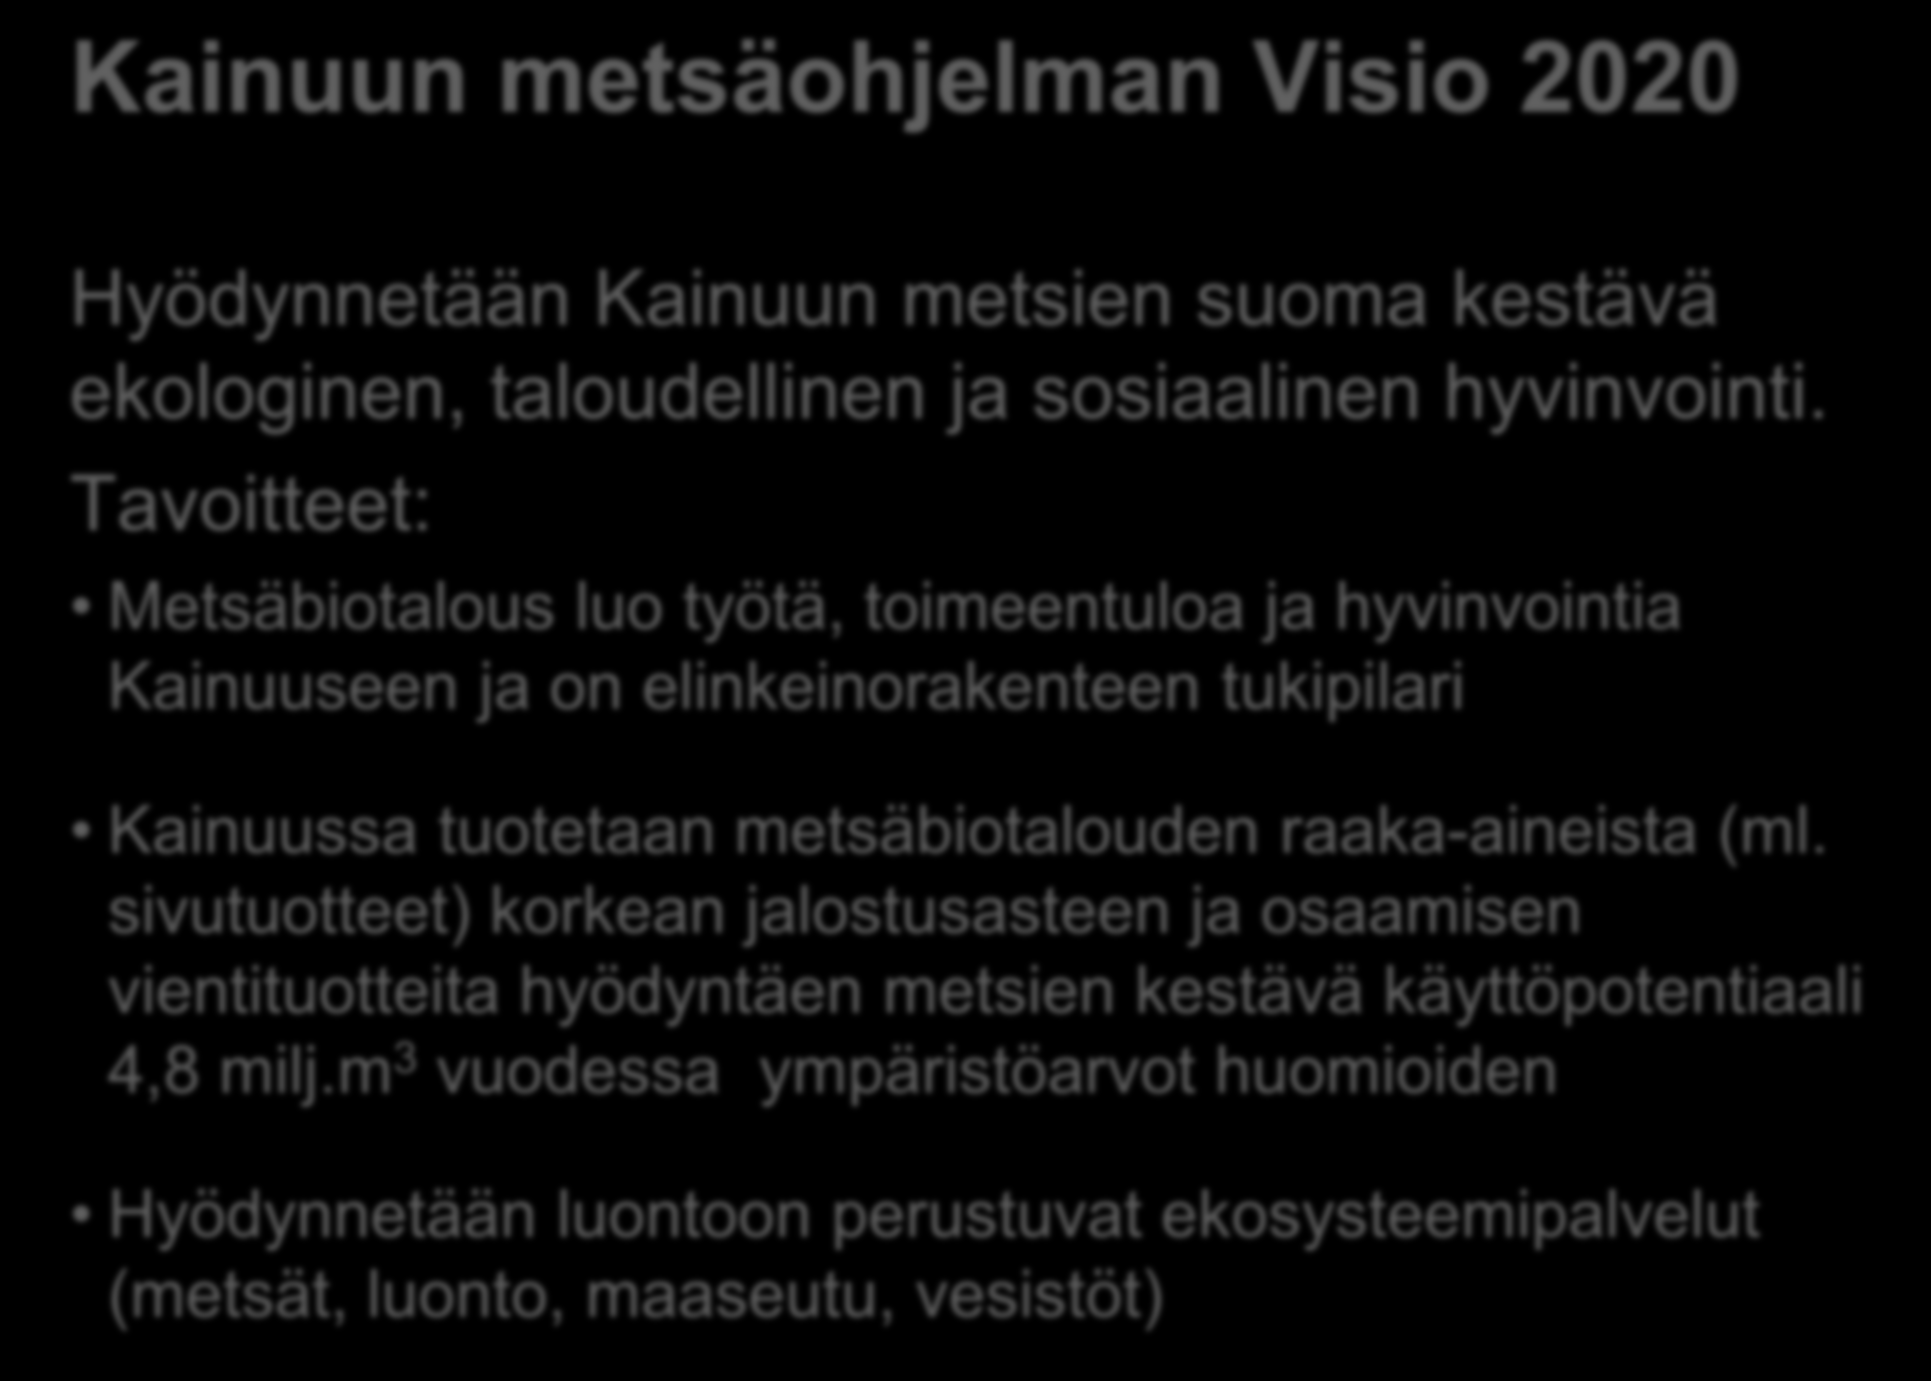 Kainuun metsäohjelman Visio 2020 Hyödynnetään Kainuun metsien suoma kestävä ekologinen, taloudellinen ja sosiaalinen hyvinvointi.